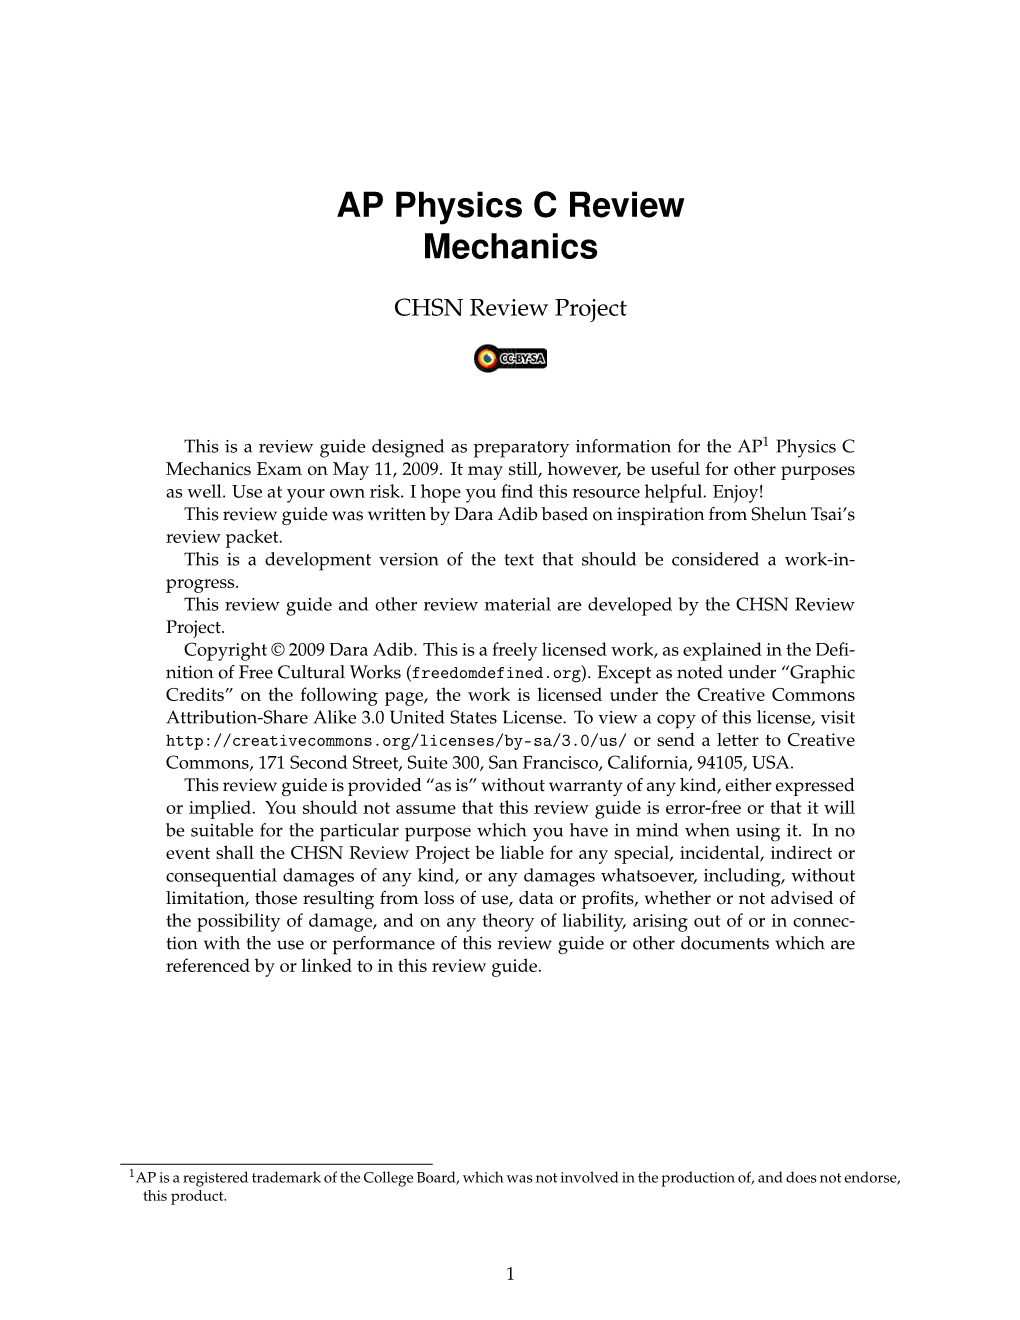 AP Physics C Review Mechanics